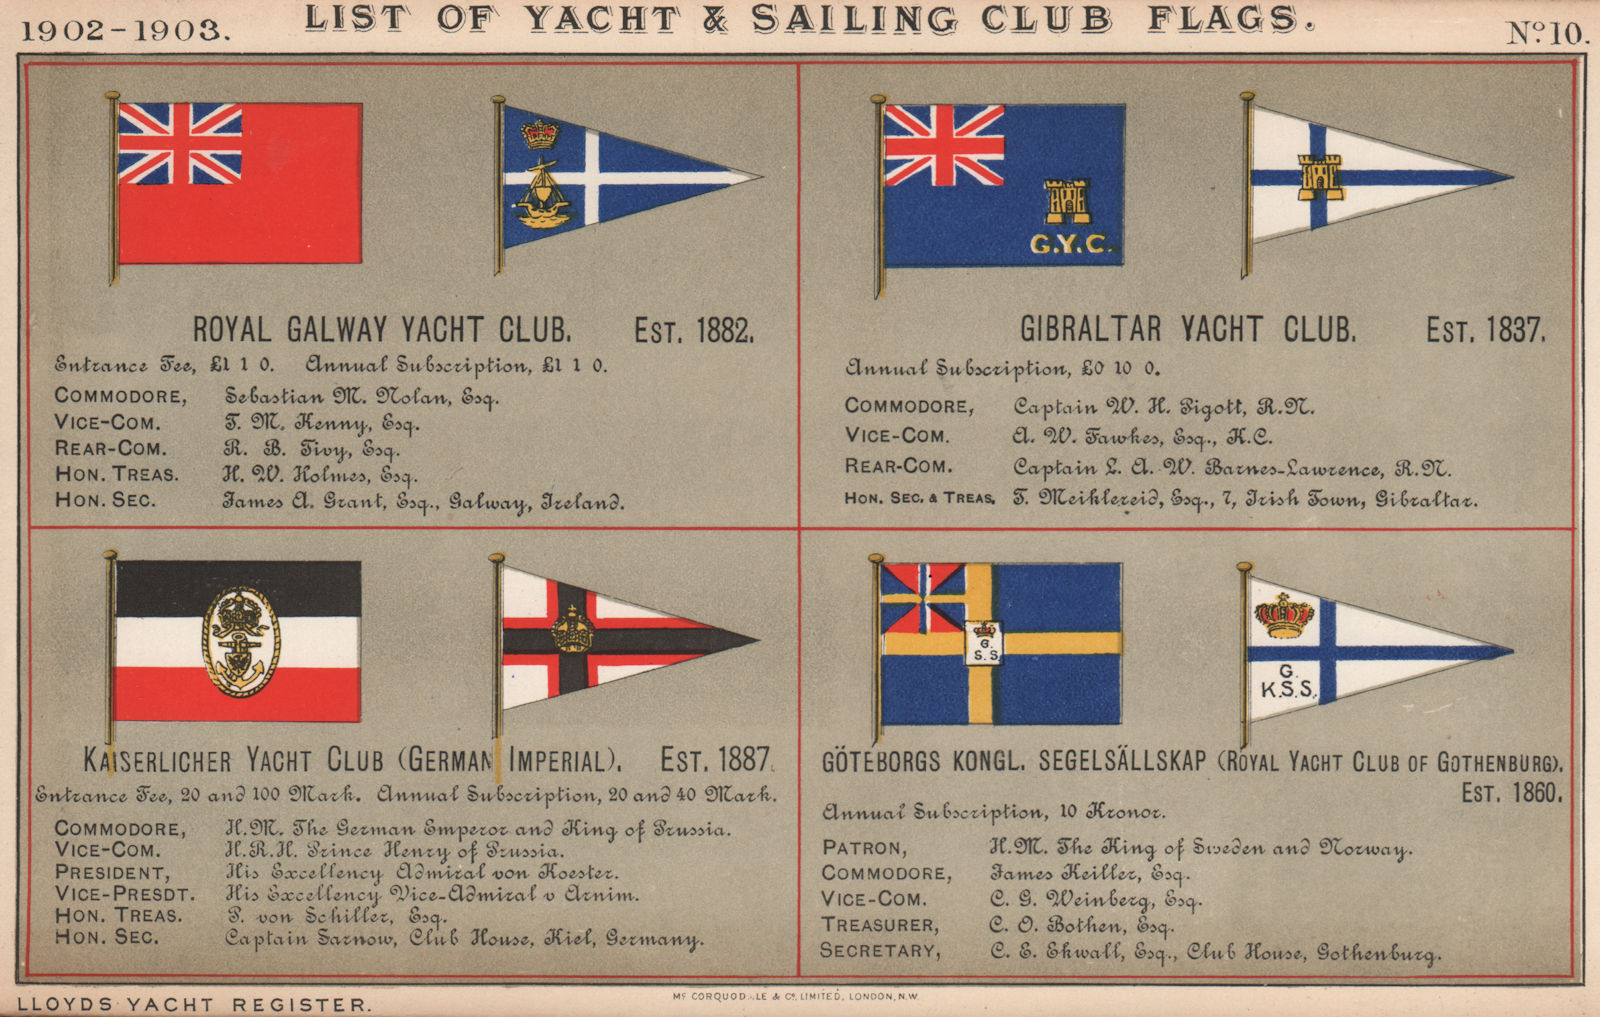 ROYAL YACHT/SAILING CLUB FLAGS. Galway. Gibraltar. Kaiserlicher. Gothenburg 1902